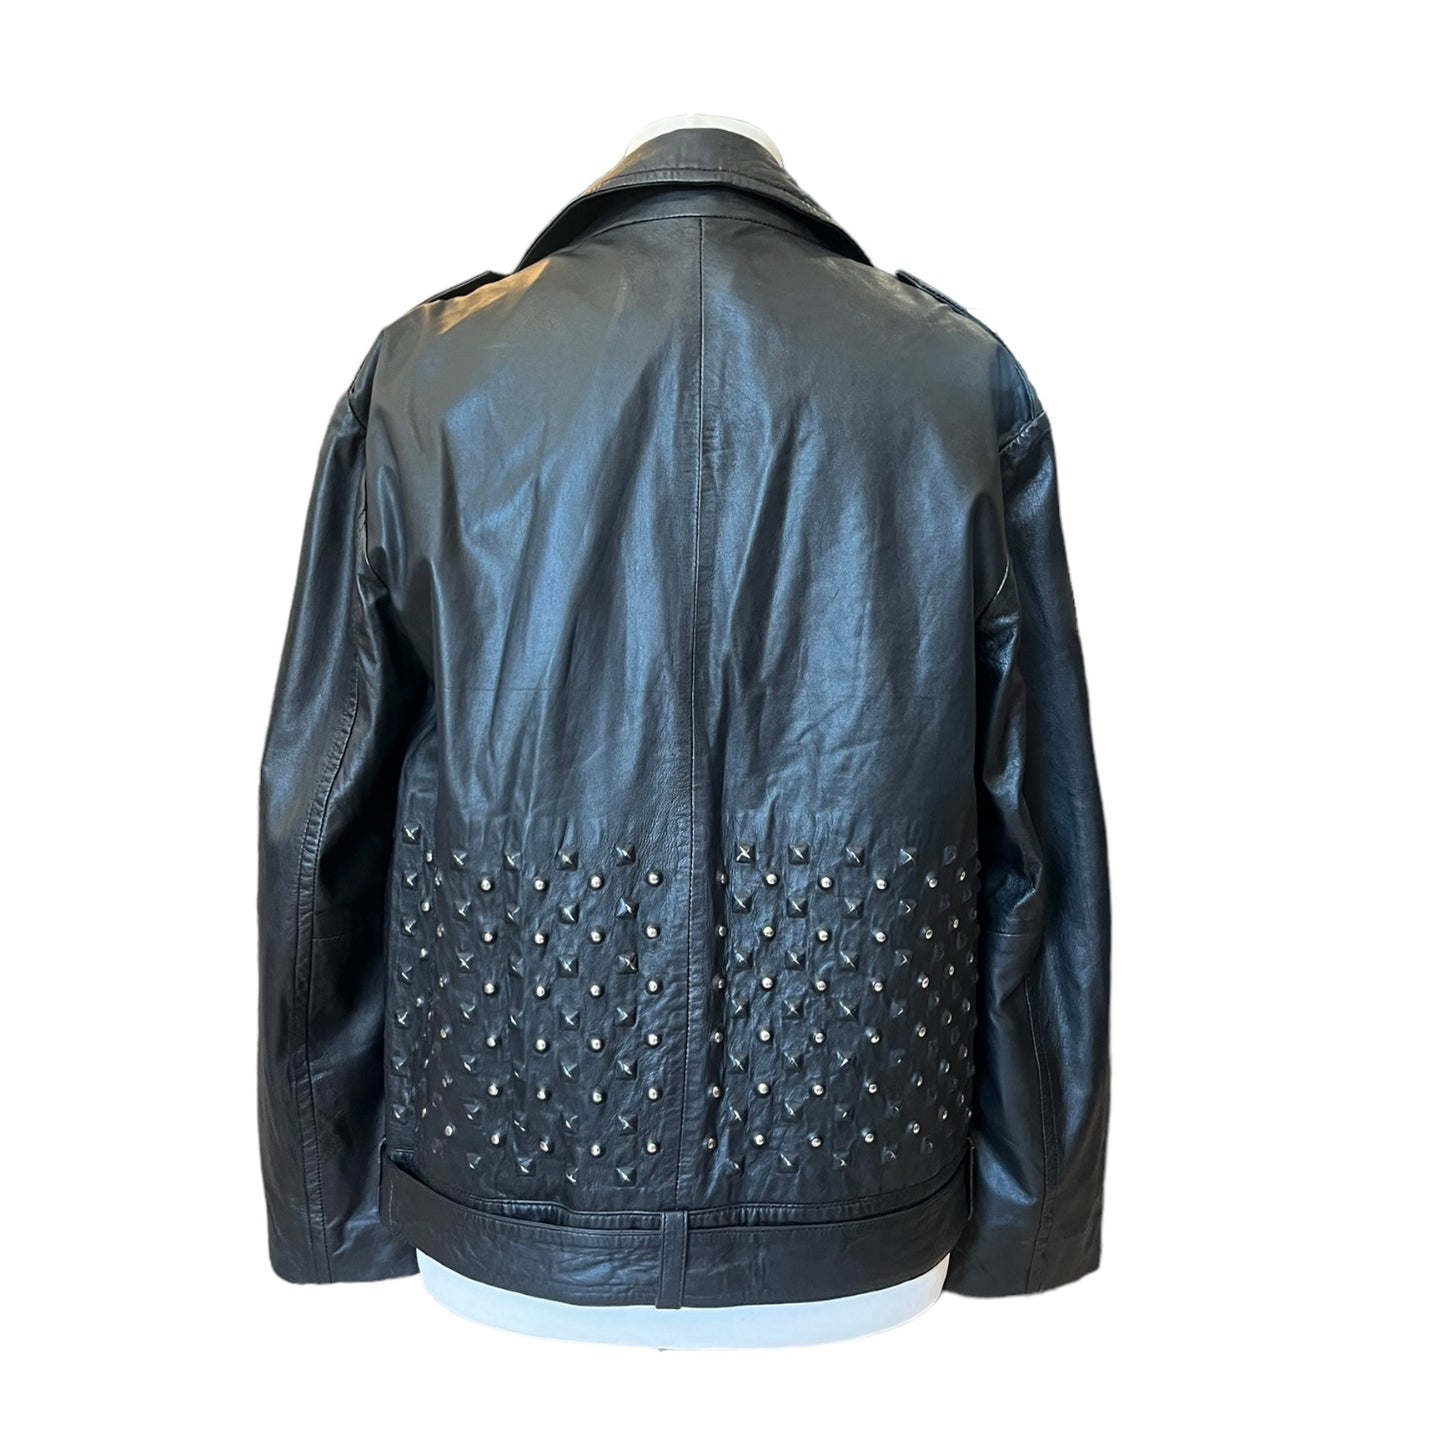 Topshop Black Leather Studded Jacket - 10